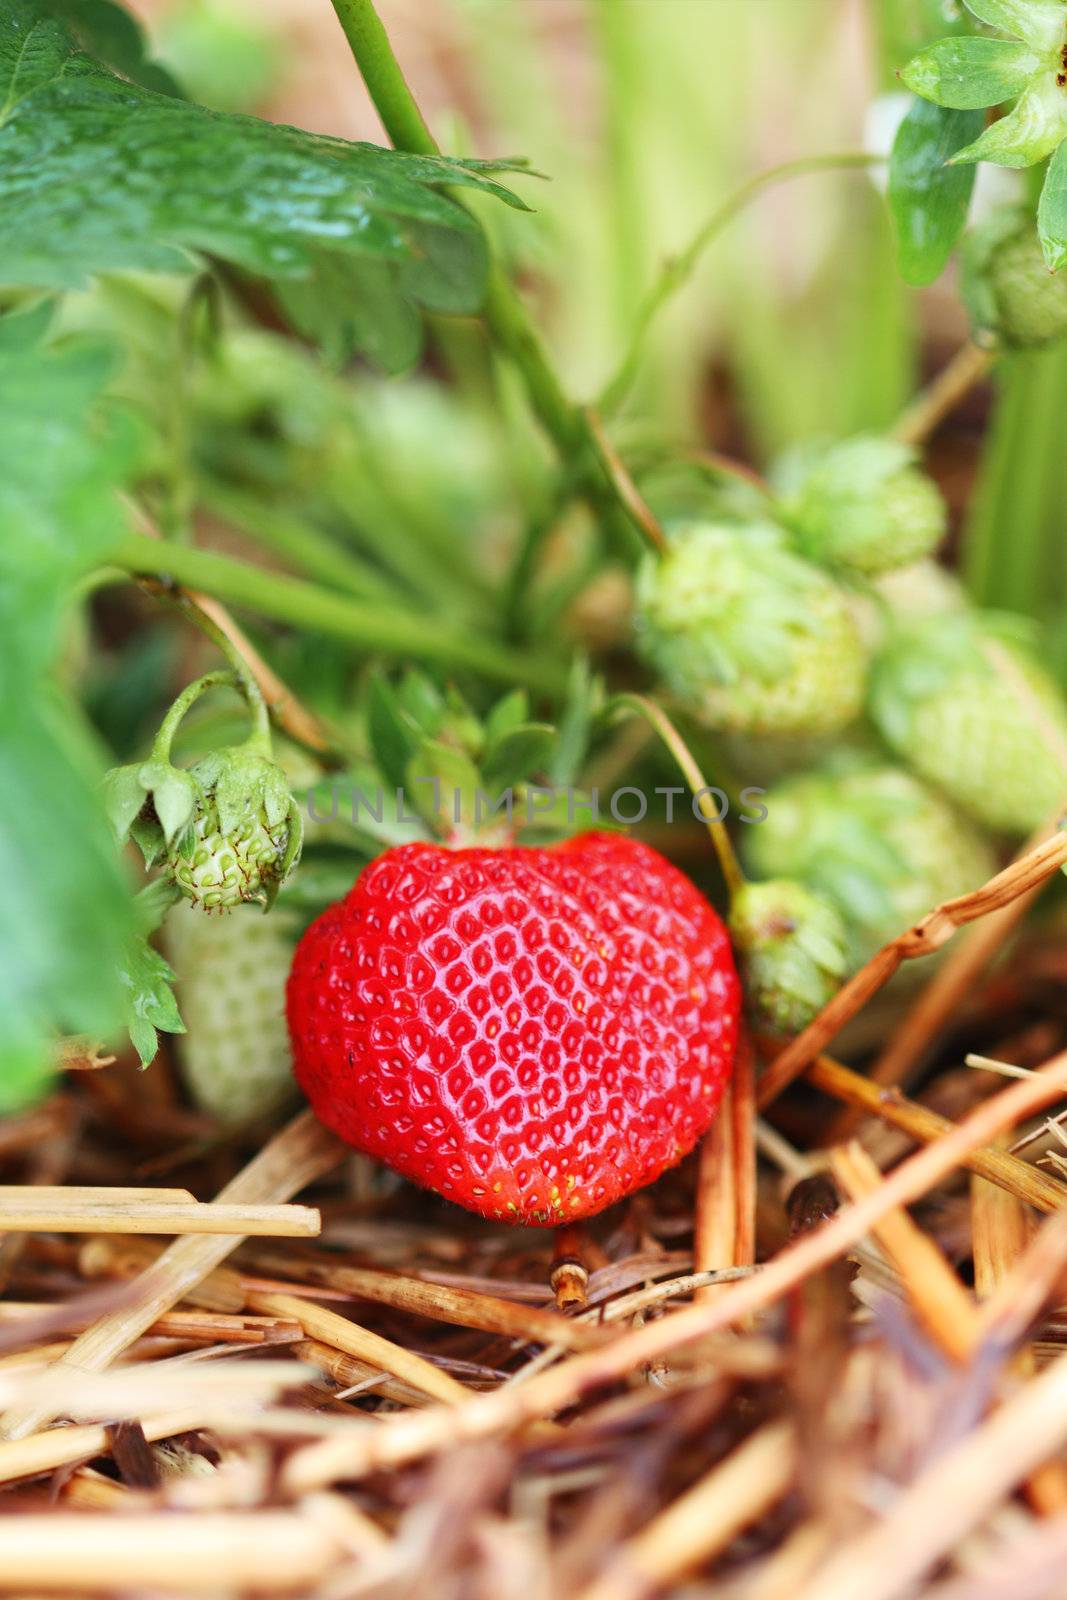 Strawberry Plant by StephanieFrey